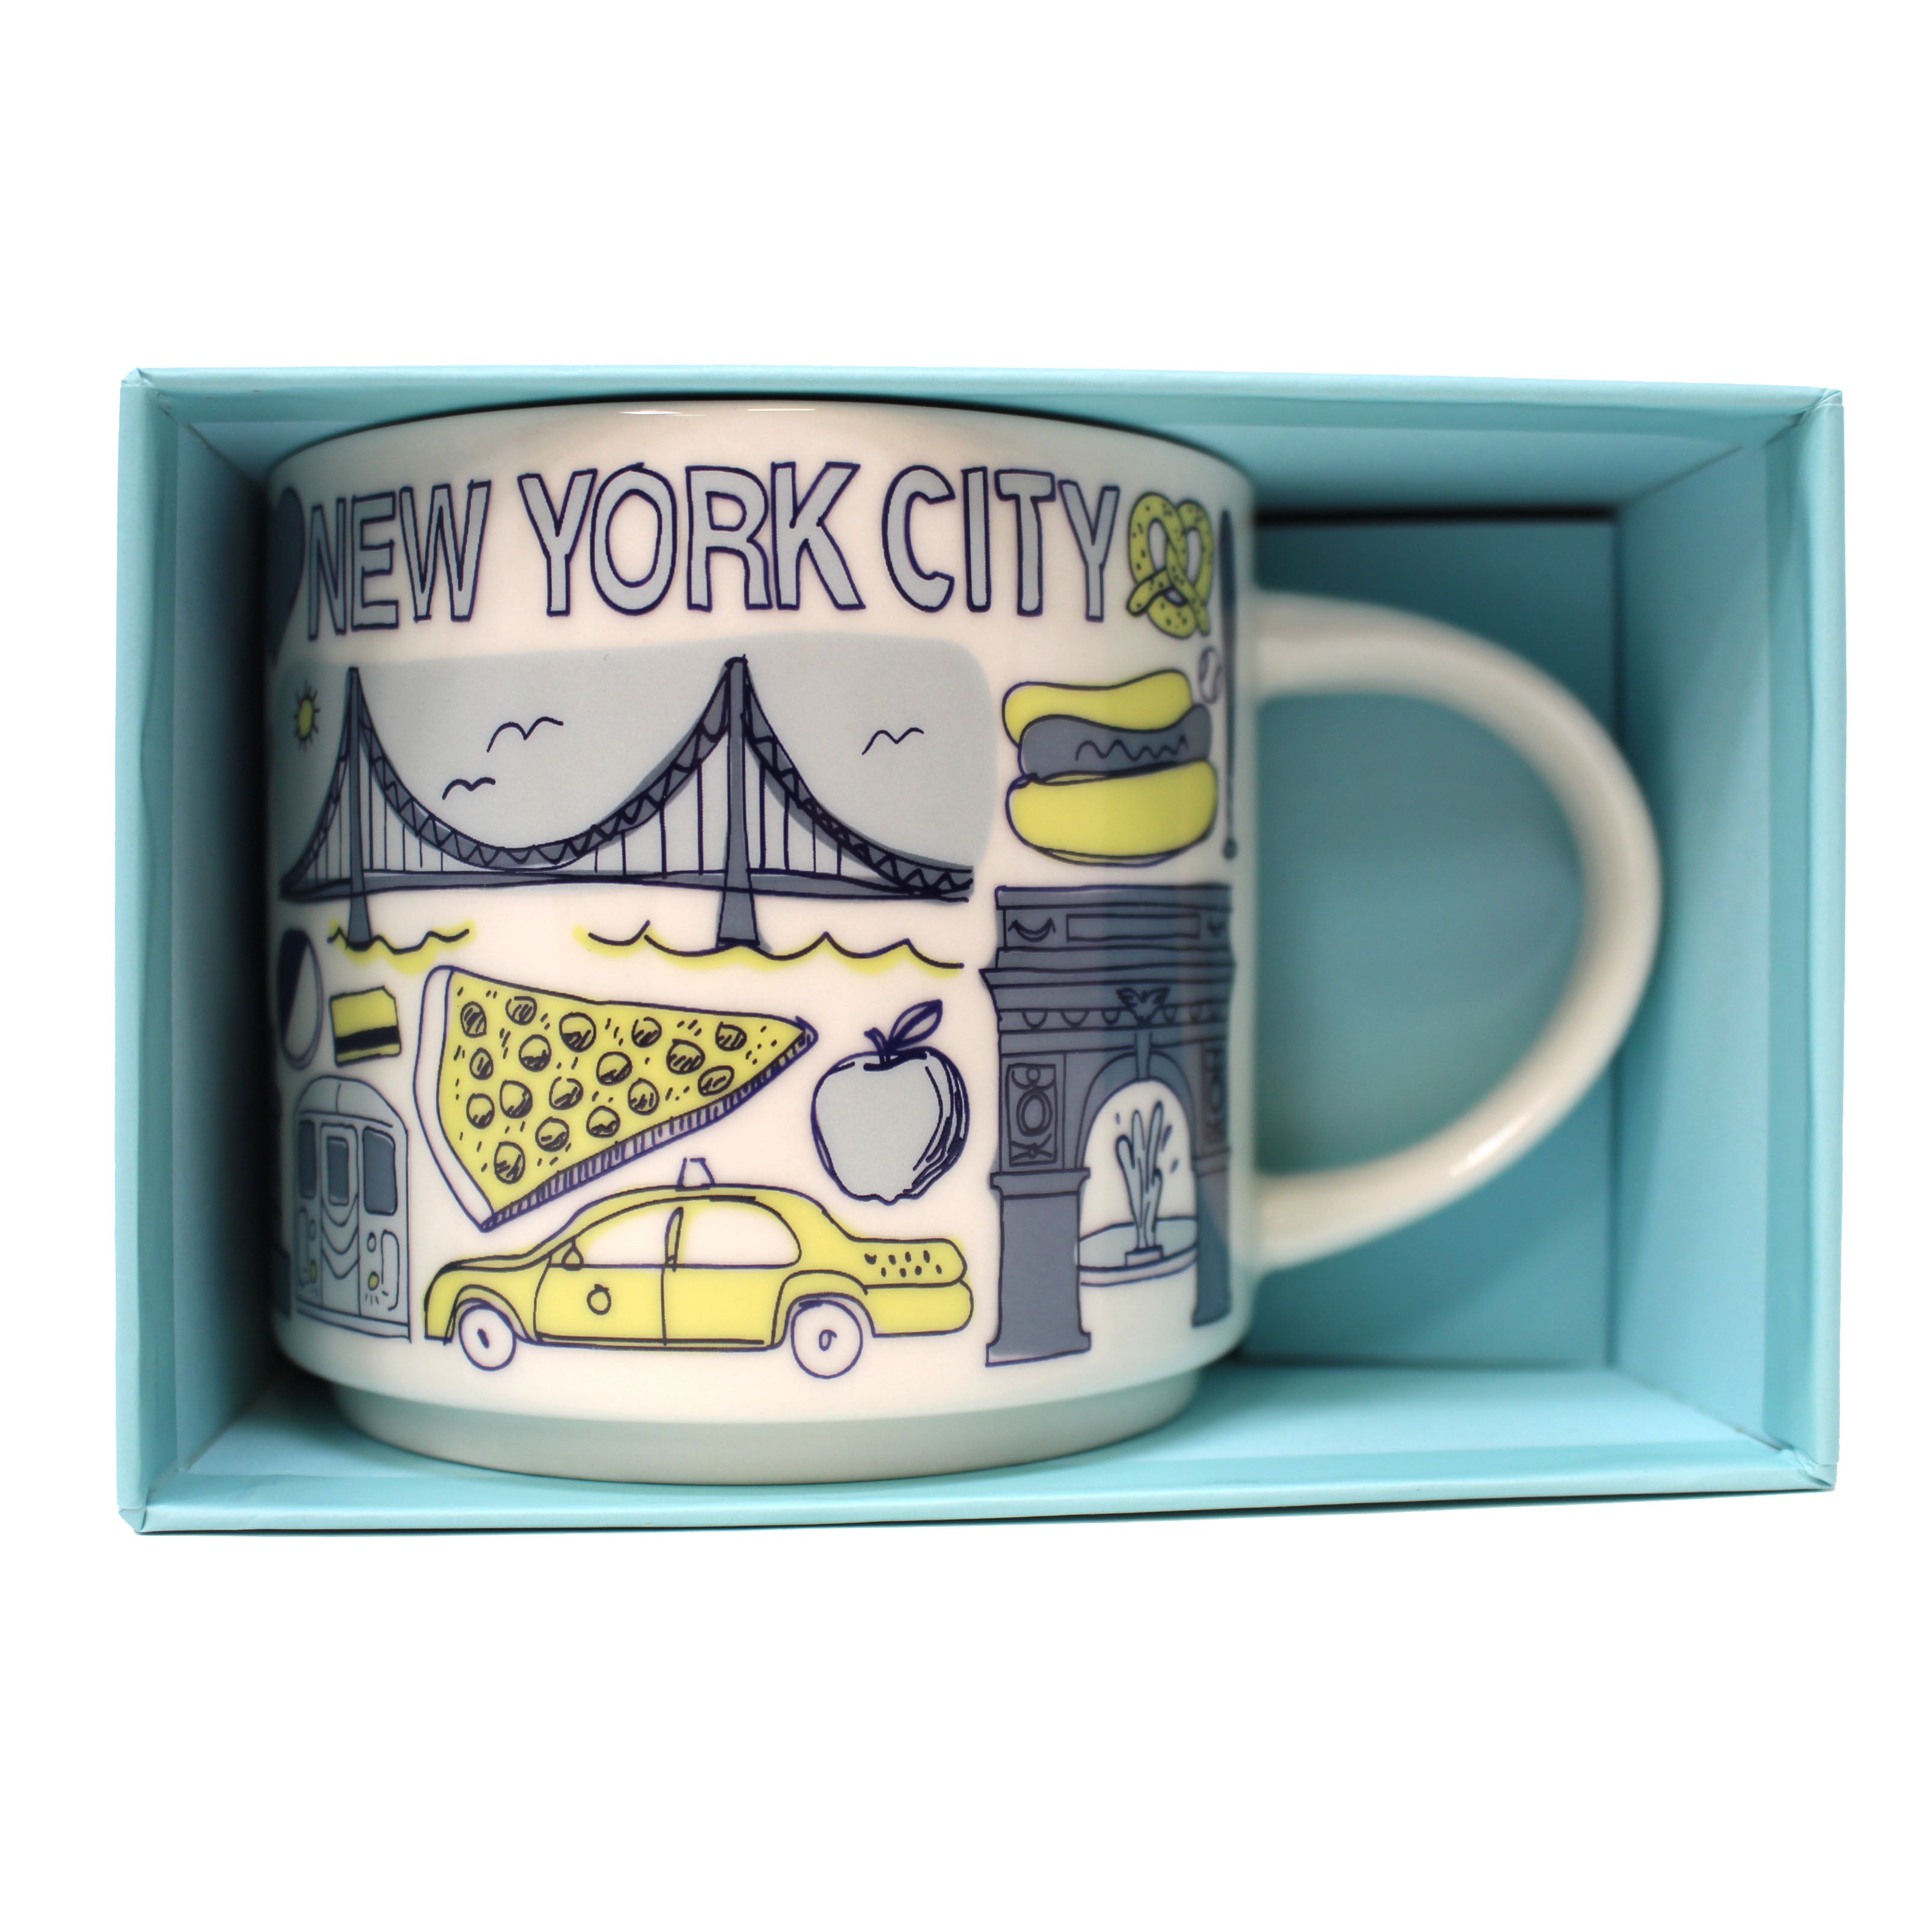 Starbucks Been There Series New York Knickerbocker State Ceramic Mug, 14 Oz